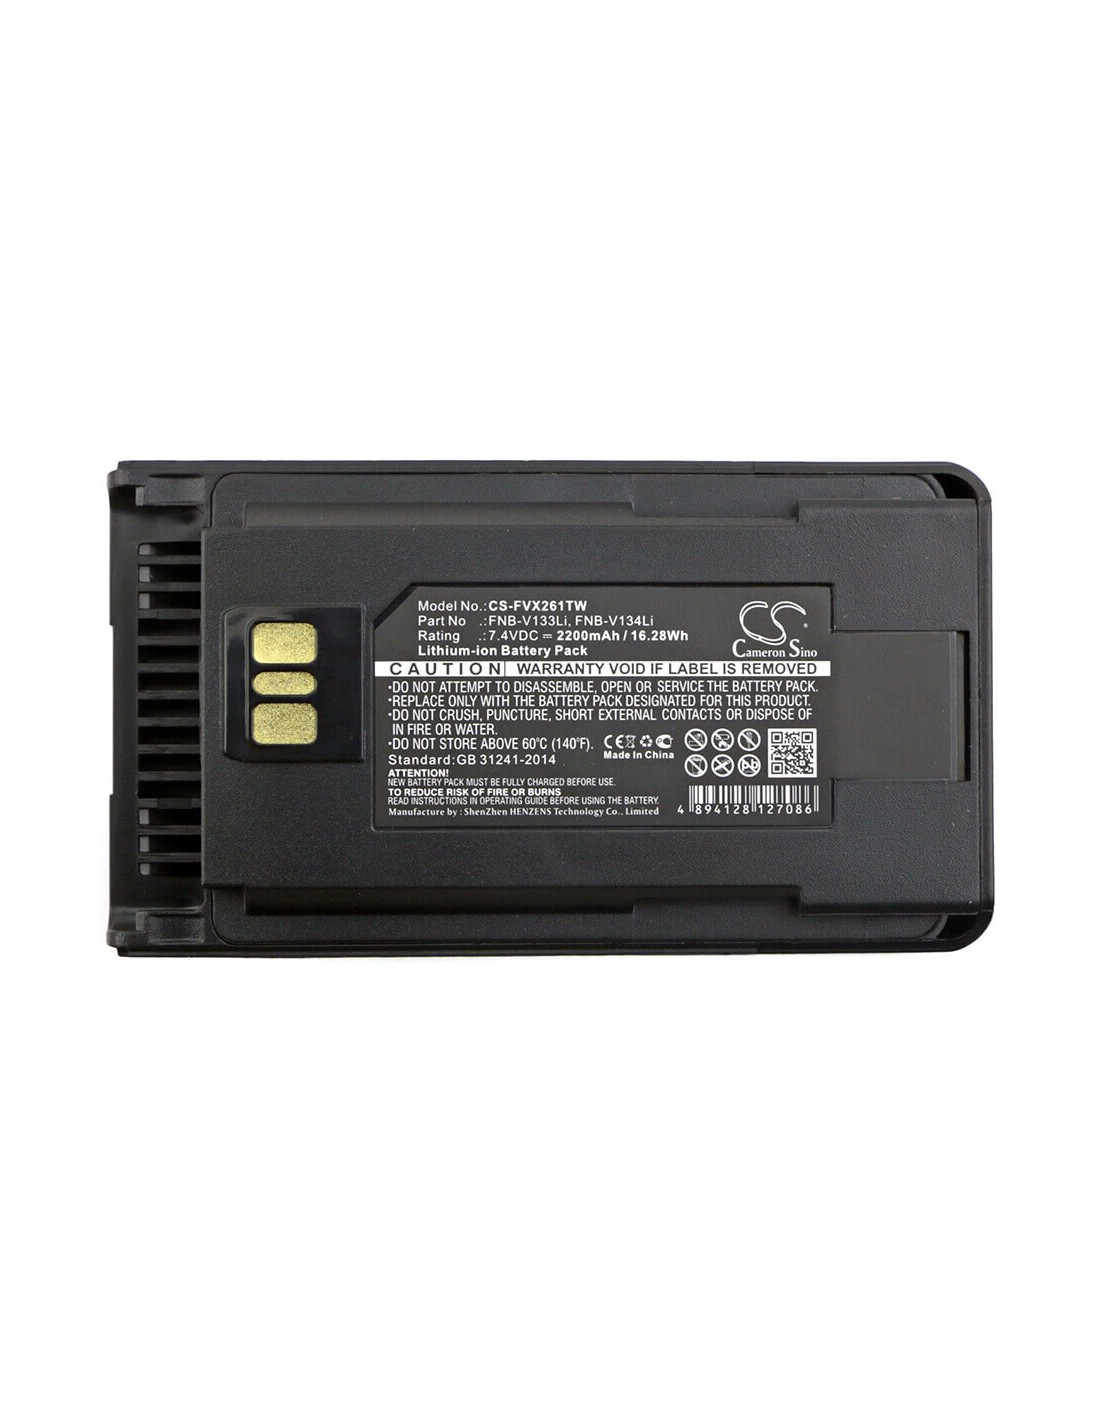 Battery for Vertex, Evx-530, Evx-531 7.4V, 2200mAh - 16.28Wh